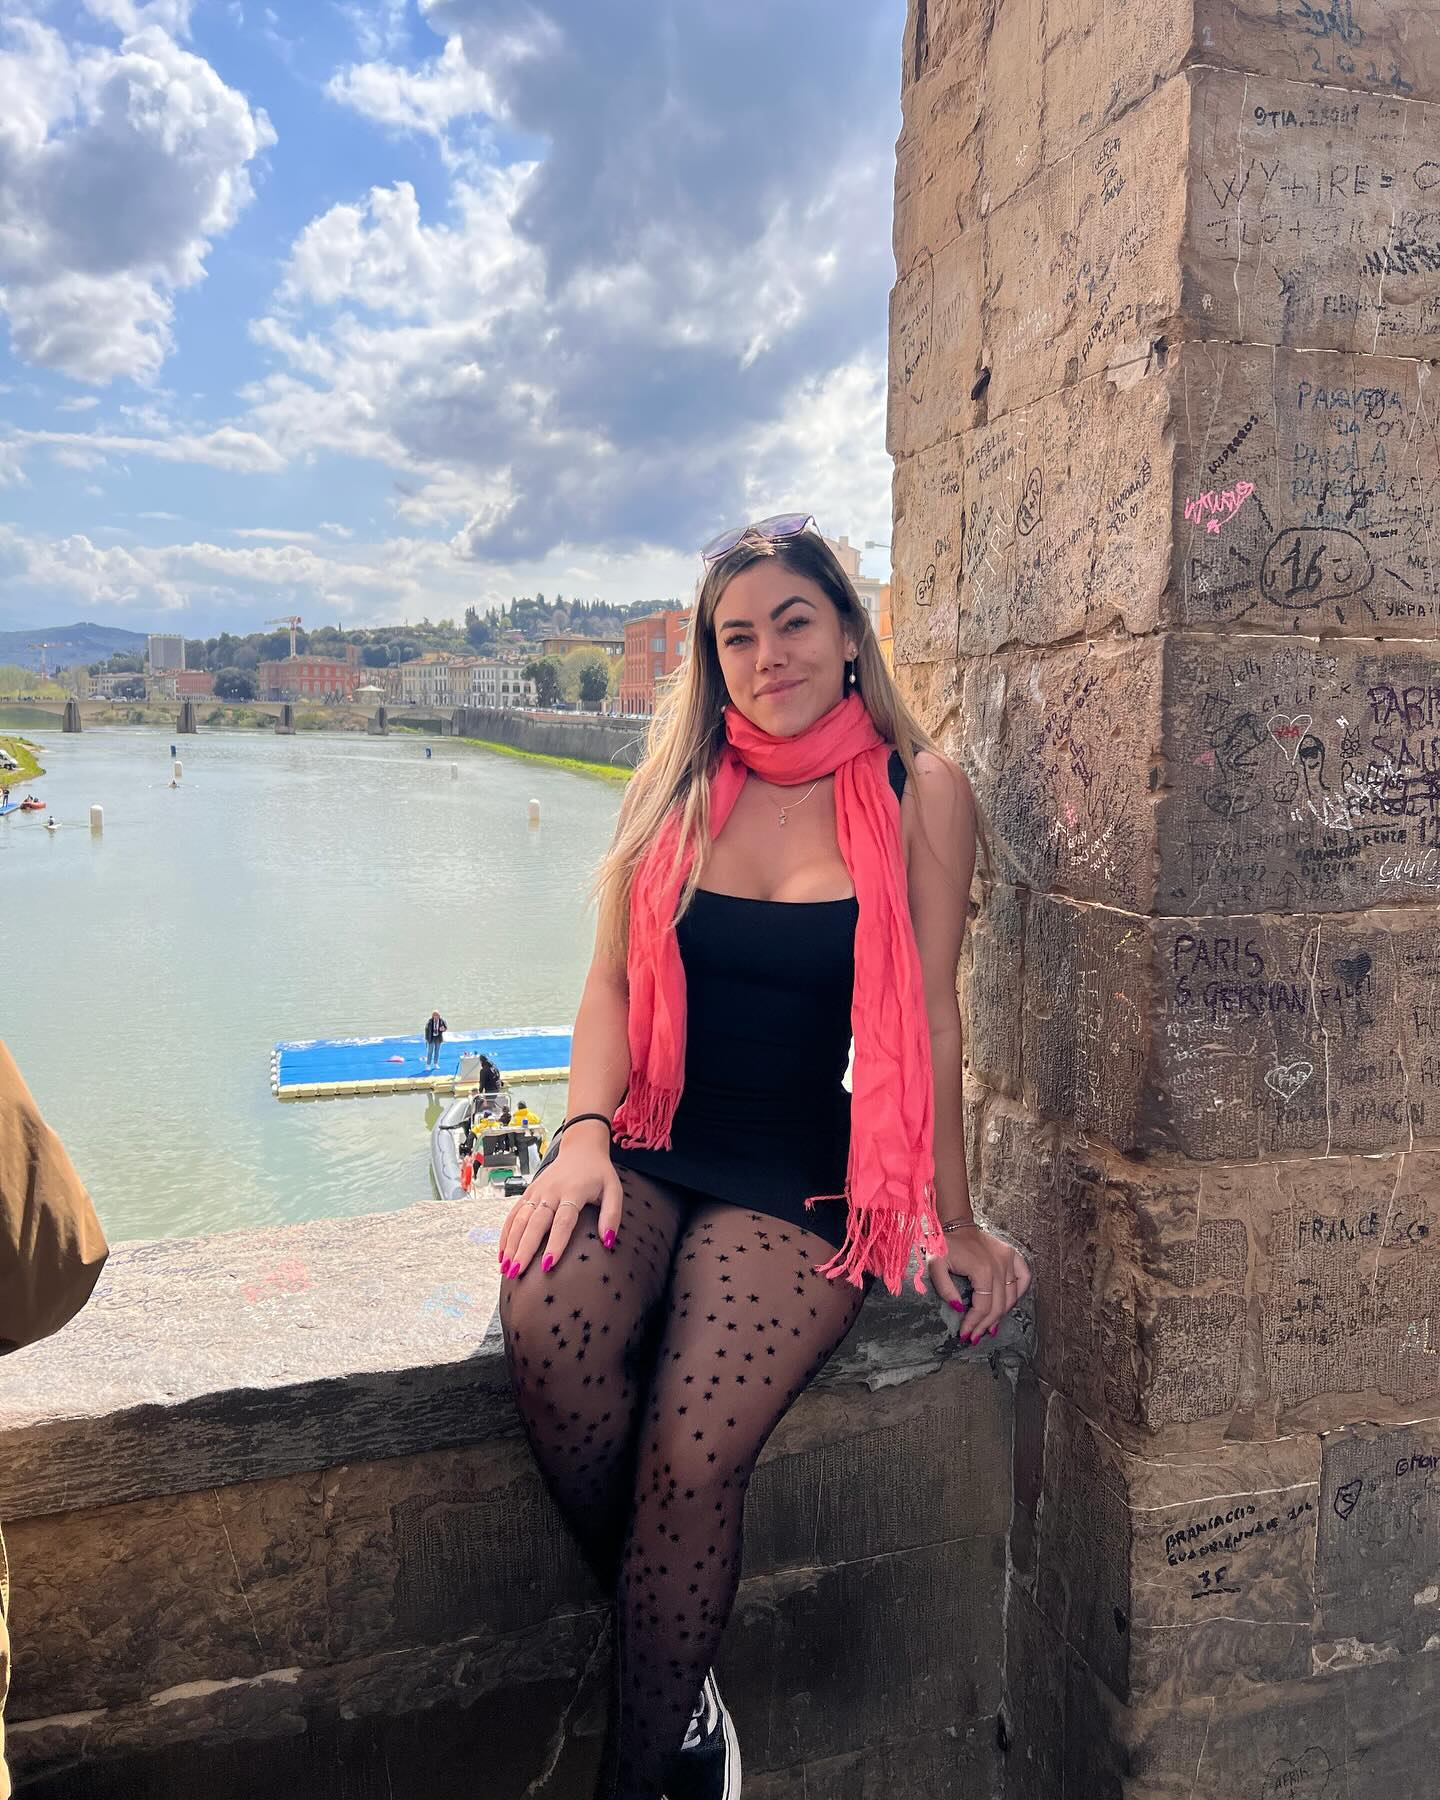 Ponte Vecchio ♥️

A Ponte Vecchio é para Florença o que o Coliseu é para Roma, já que sua imagem é a mais conhecida e representativa da cidade. A Ponte Vecchio é o símbolo do romantismo que inunda toda Florença. As origens da “Ponte Velha” remontam ao ano 1345, o que faz dela a ponte de pedra mais antiga da Europa. ✨